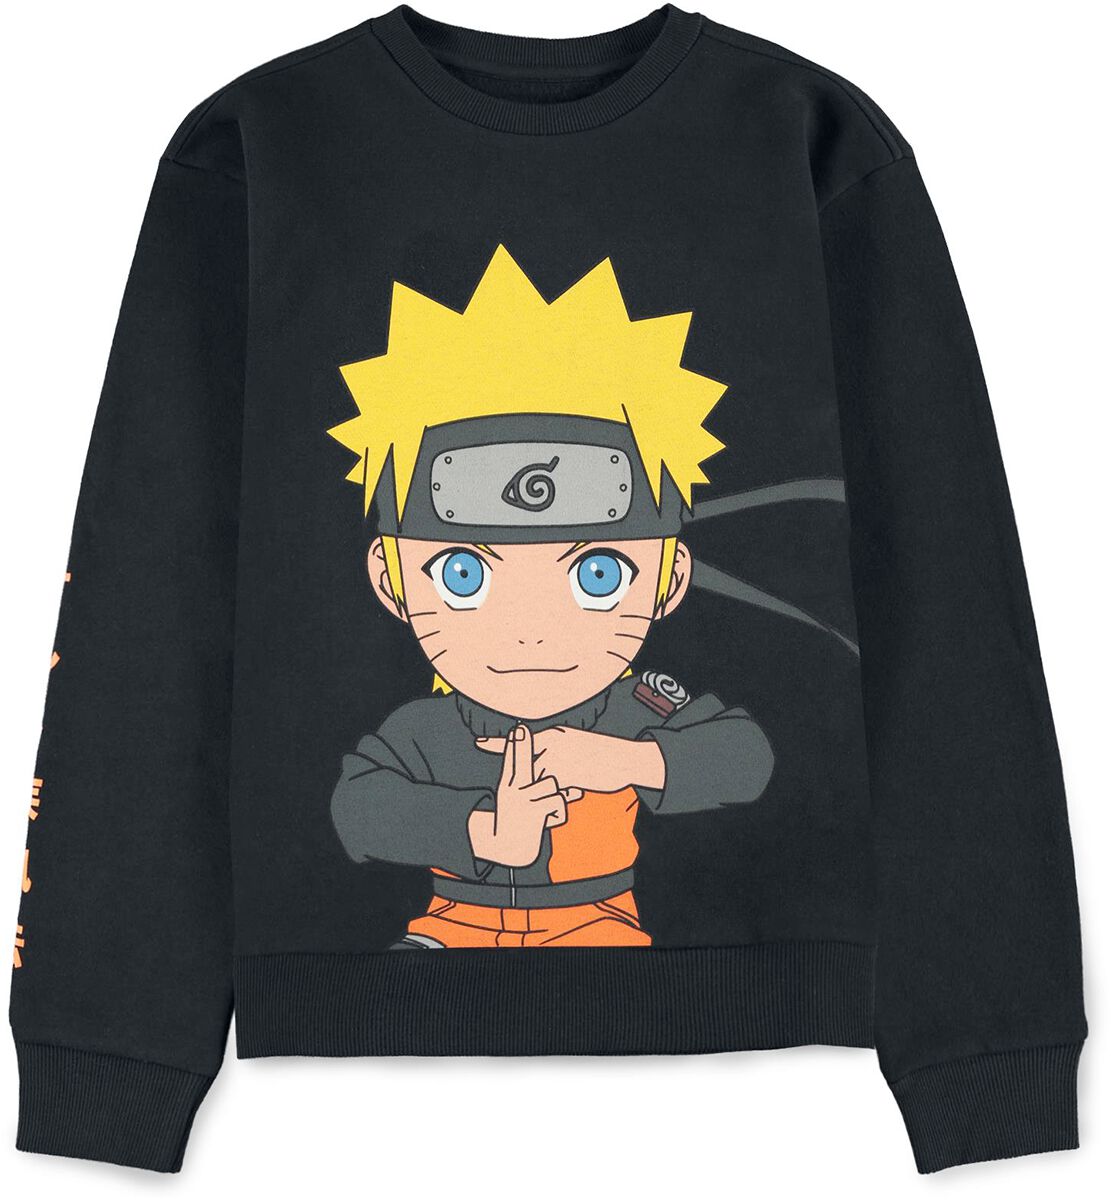 Naruto - Anime Sweatshirt für Kinder - Kids - Shippuden - Naruto Uzumaki - für Mädchen & Jungen - schwarz  - Lizenzierter Fanartikel